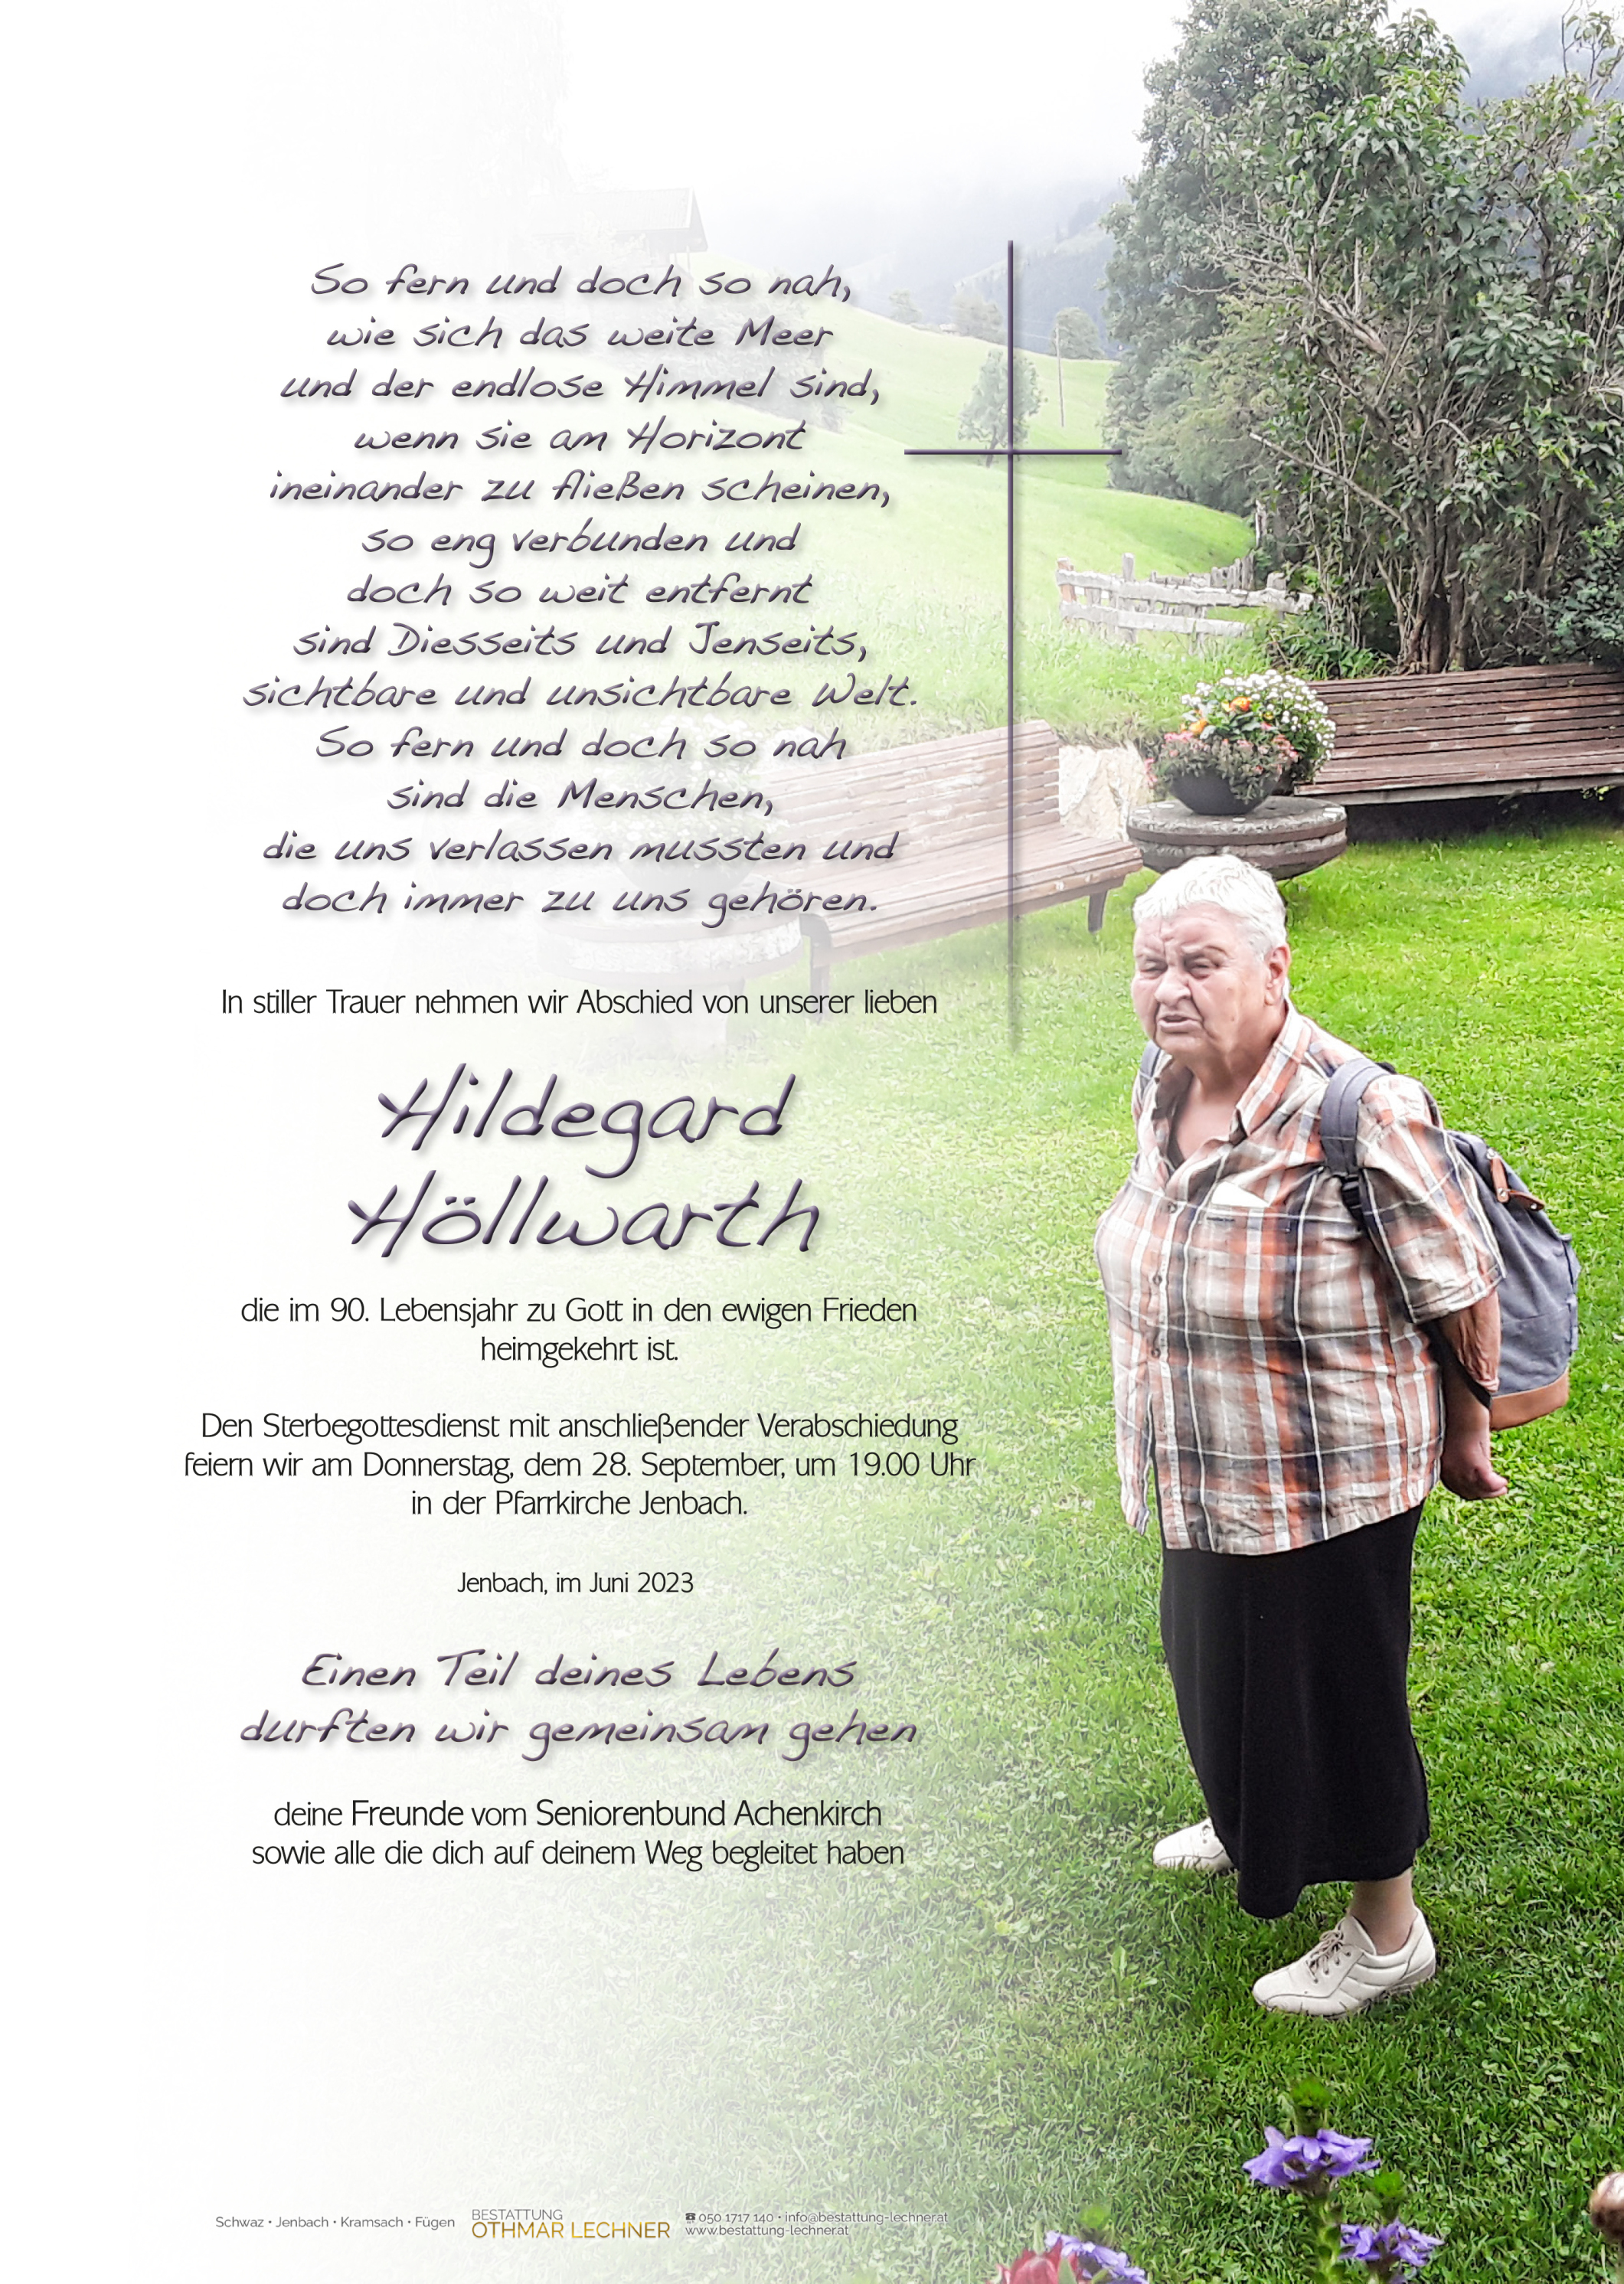 Hildegard Höllwarth